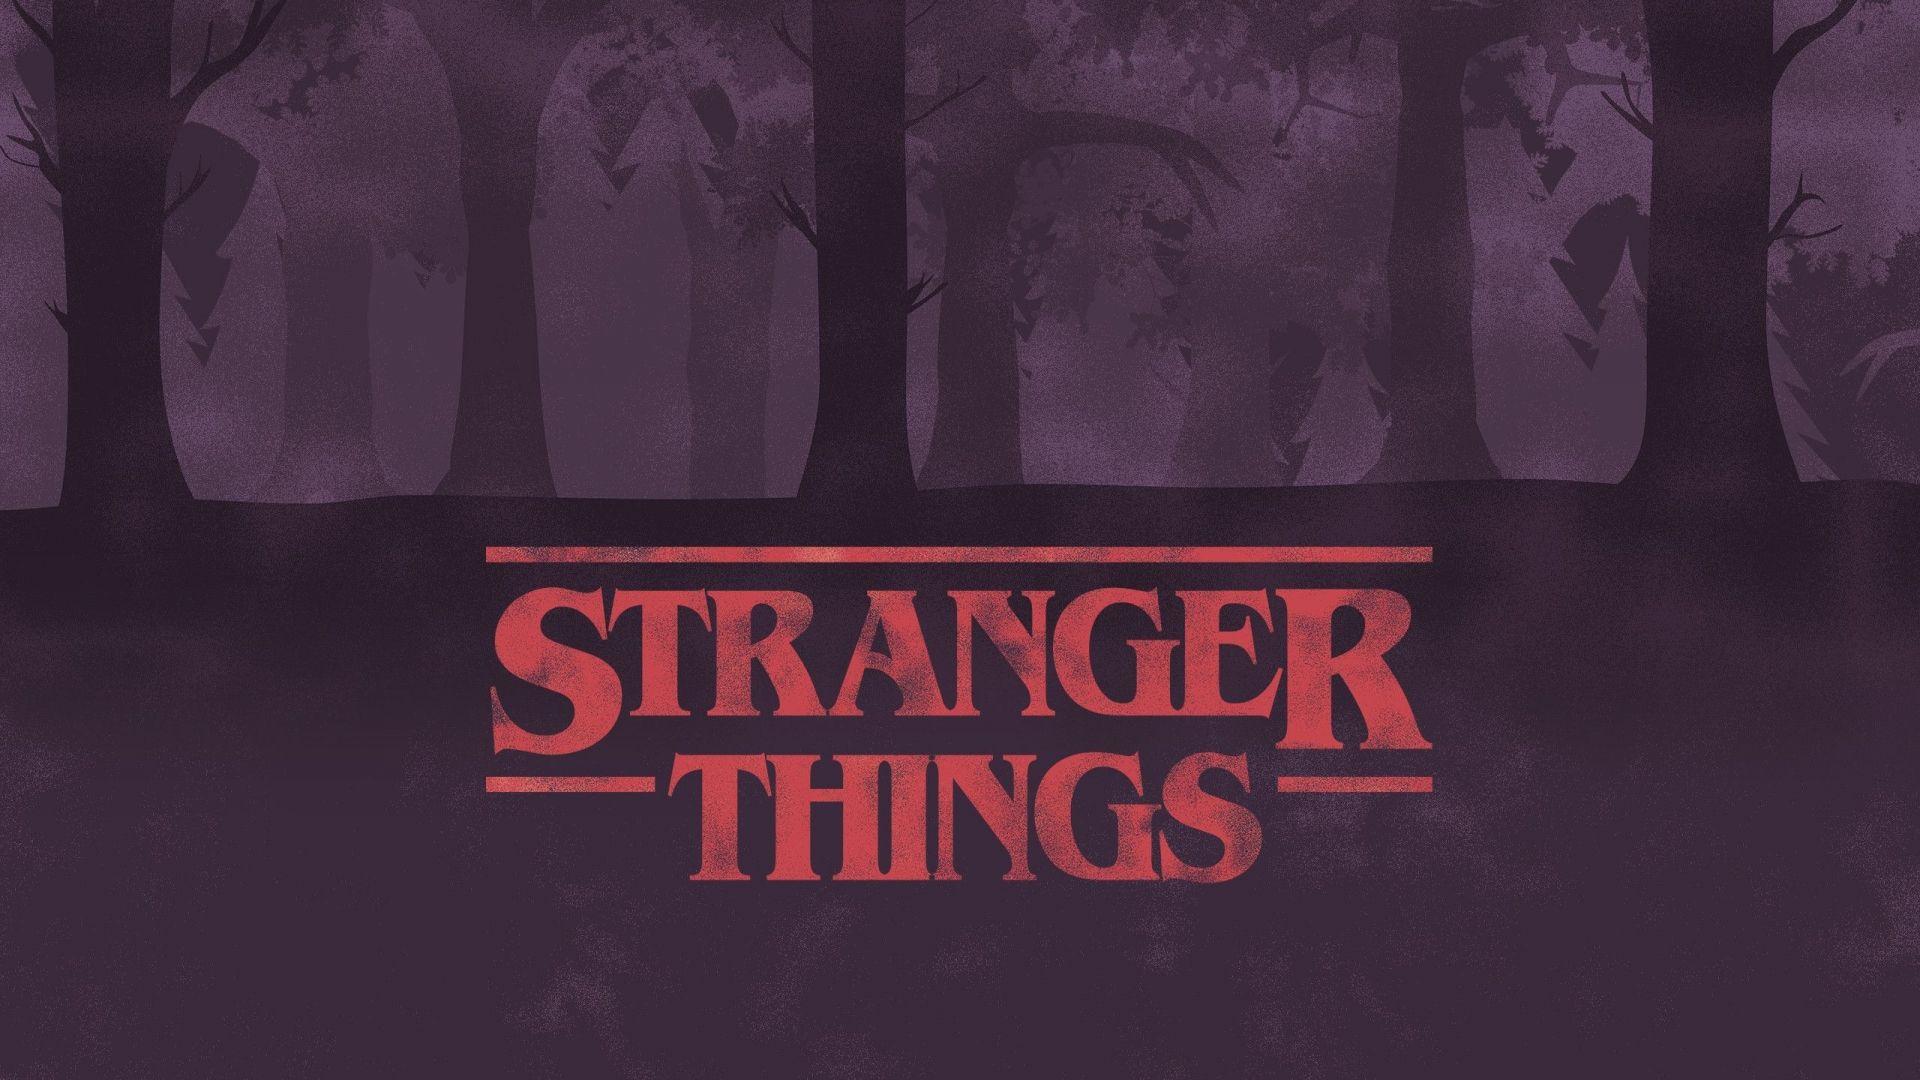 Cool Stranger Things Wallpapers for PC  PixelsTalkNet